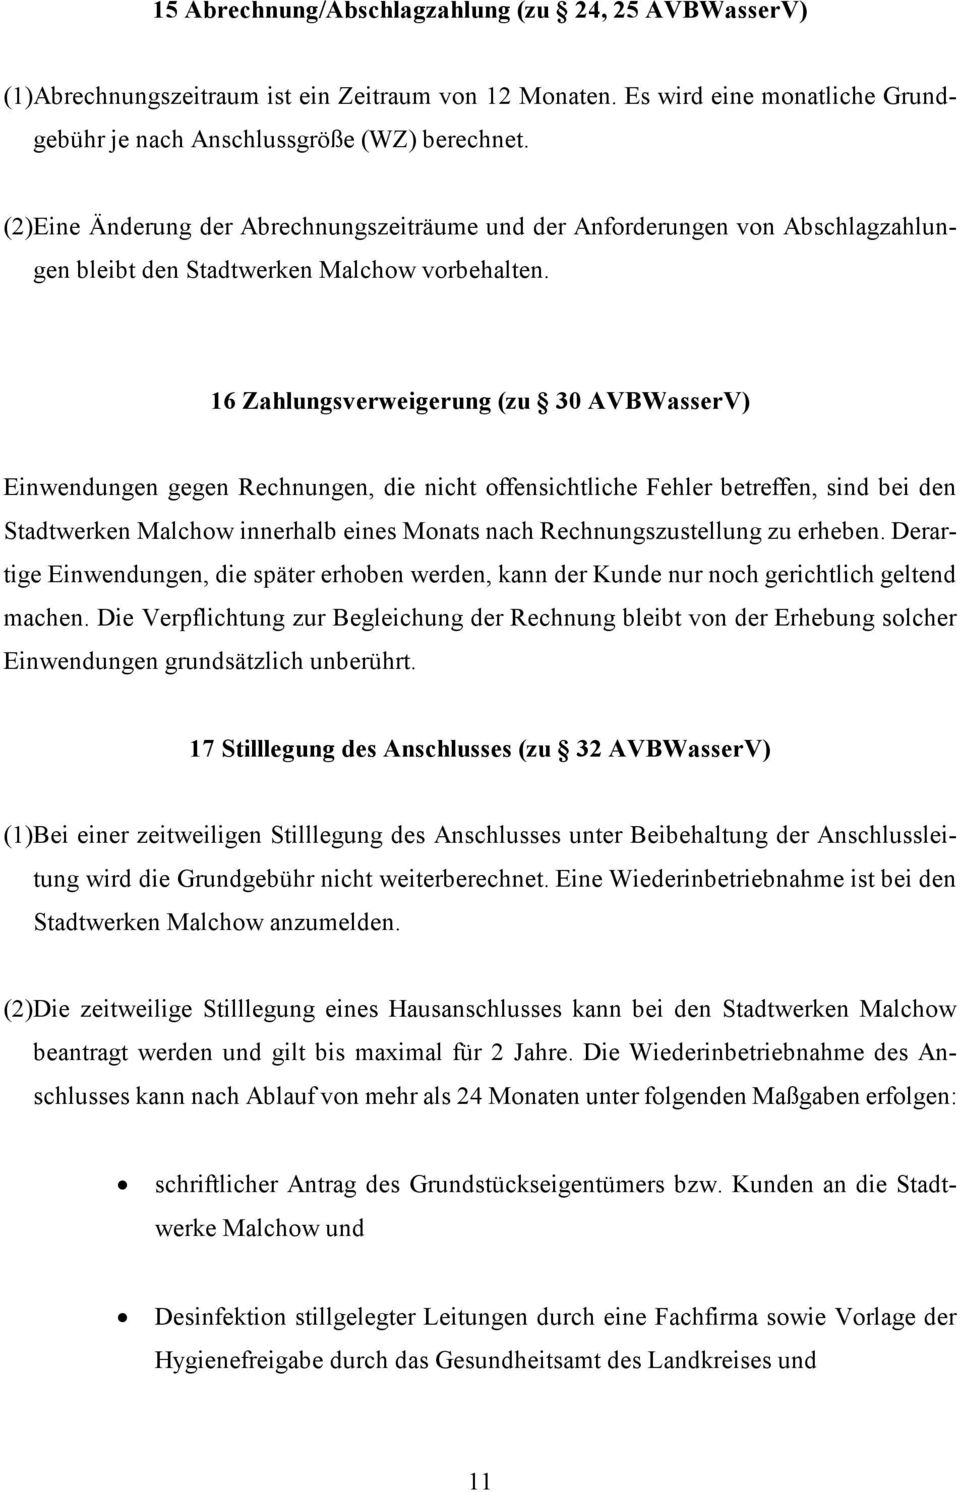 16 Zahlungsverweigerung (zu 30 AVBWasserV) Einwendungen gegen Rechnungen, die nicht offensichtliche Fehler betreffen, sind bei den Stadtwerken Malchow innerhalb eines Monats nach Rechnungszustellung